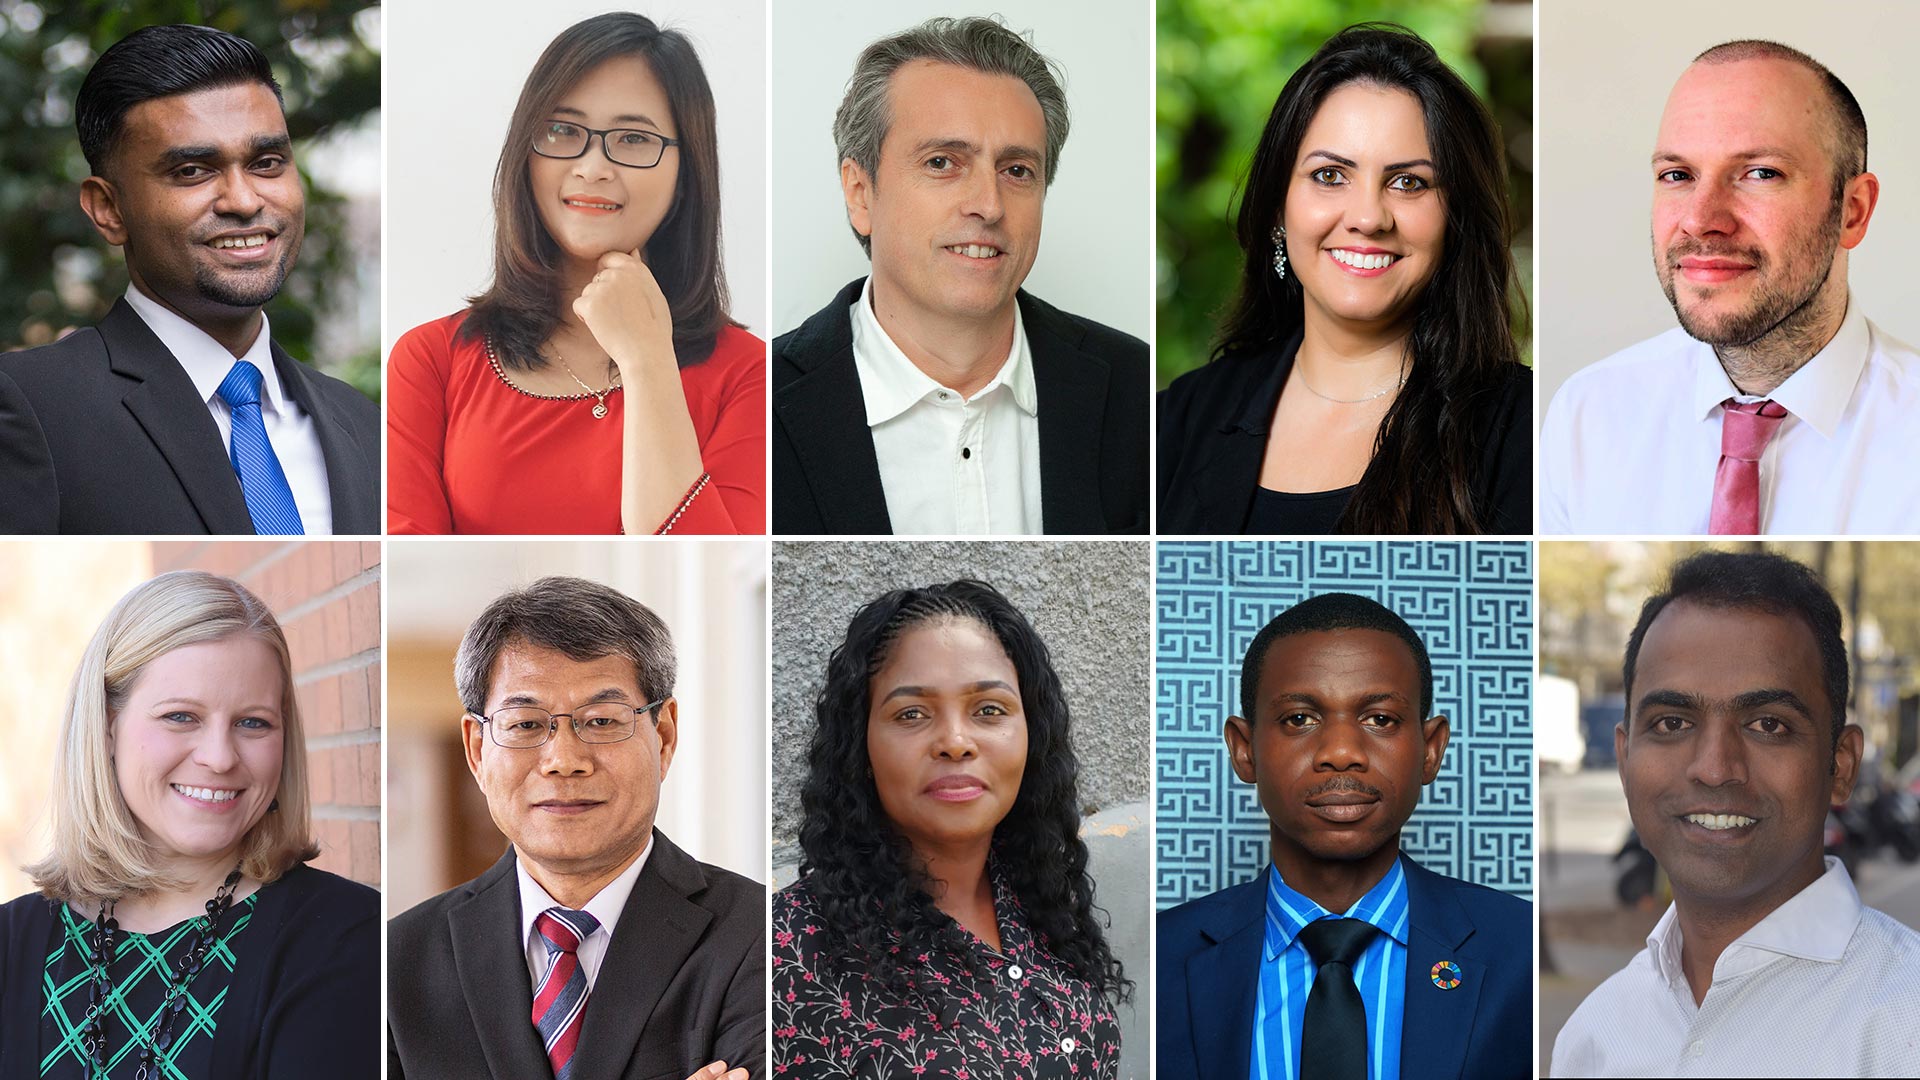 Los diez finalistas para el Global Teacher Prize